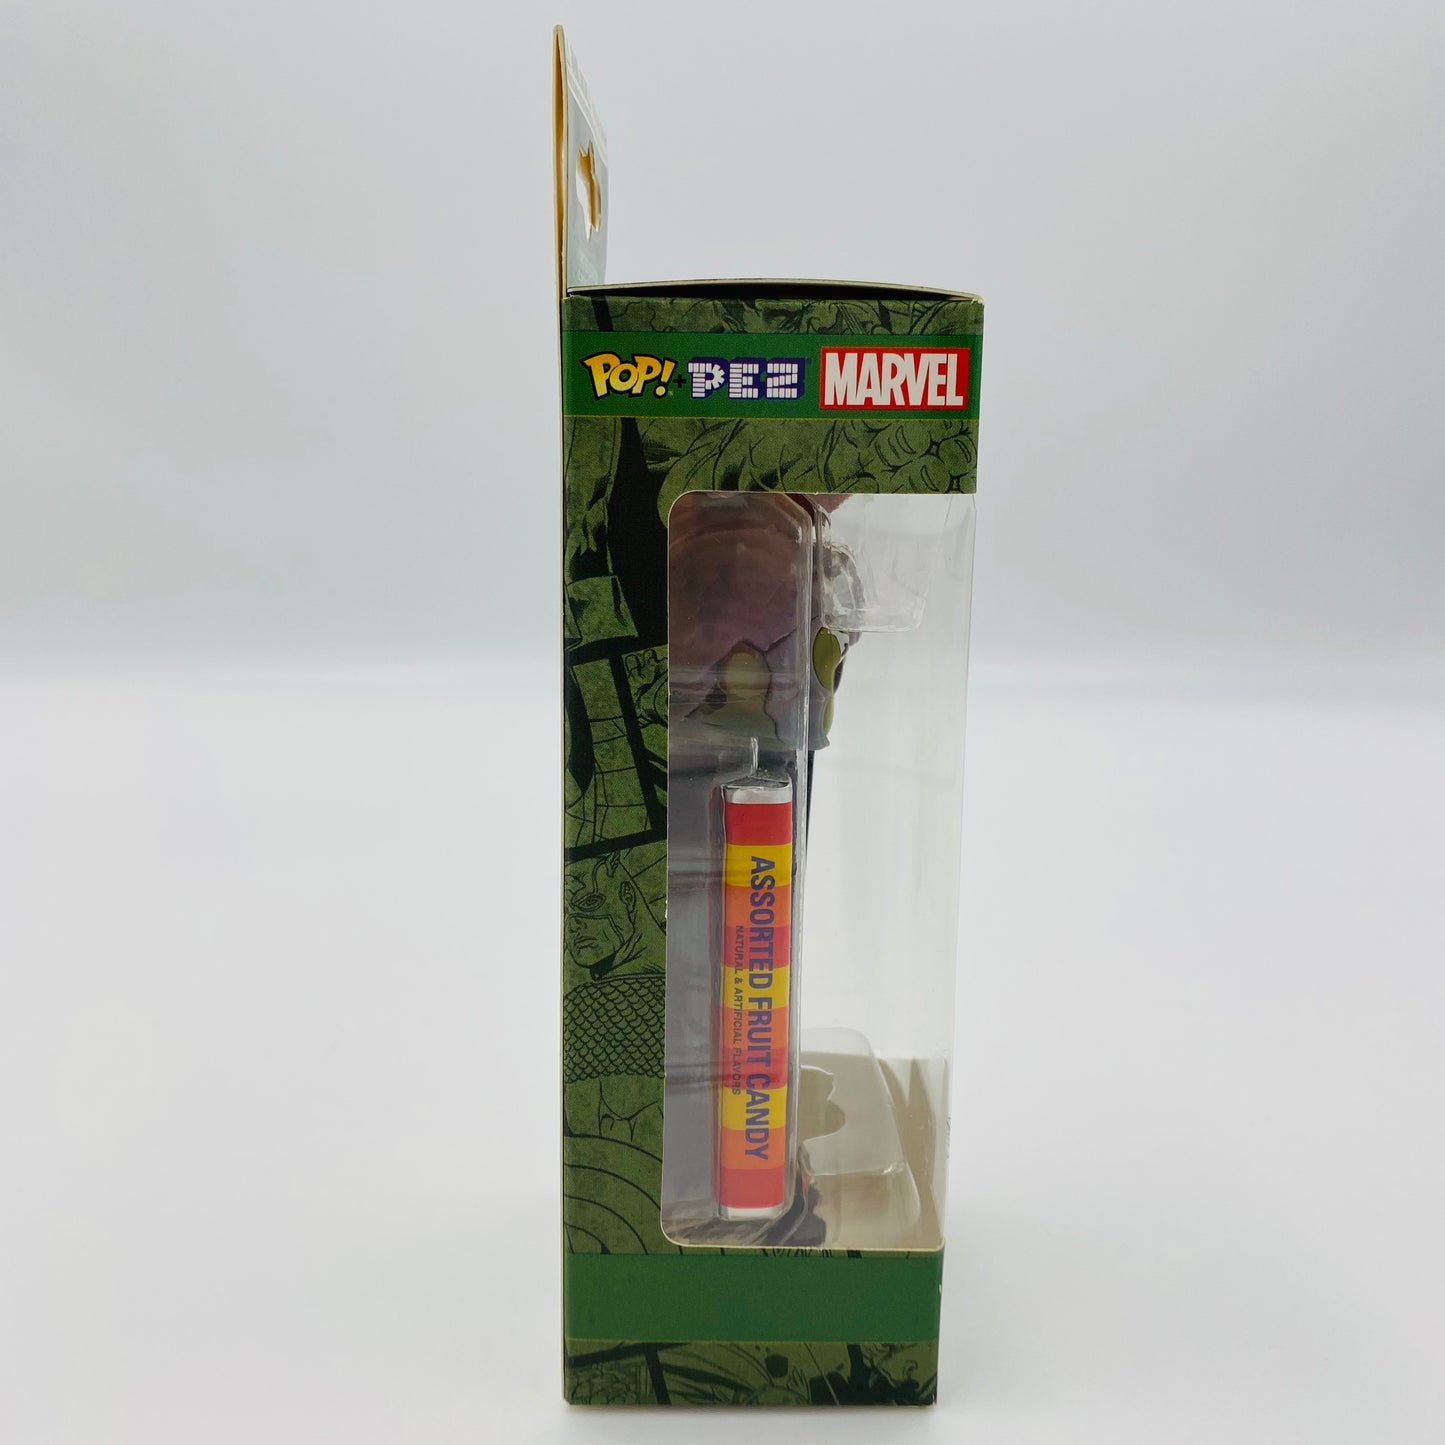 Marvel Hulk Pop! + PEZ dispenser (2018) boxed